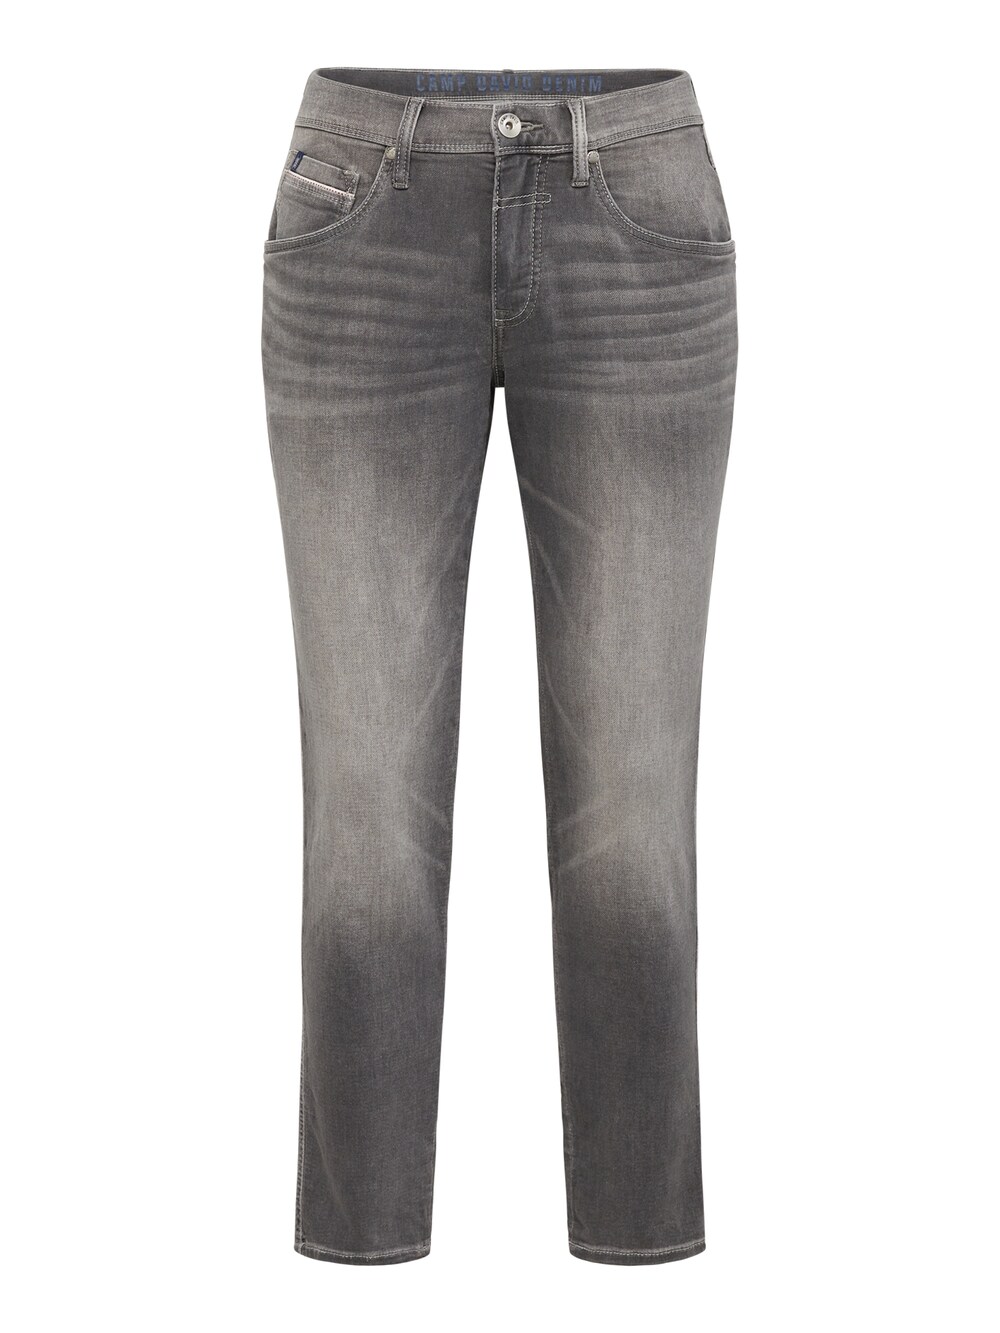 Обычные джинсы CAMP DAVID, серый обычные брюки карго camp david серо коричневый